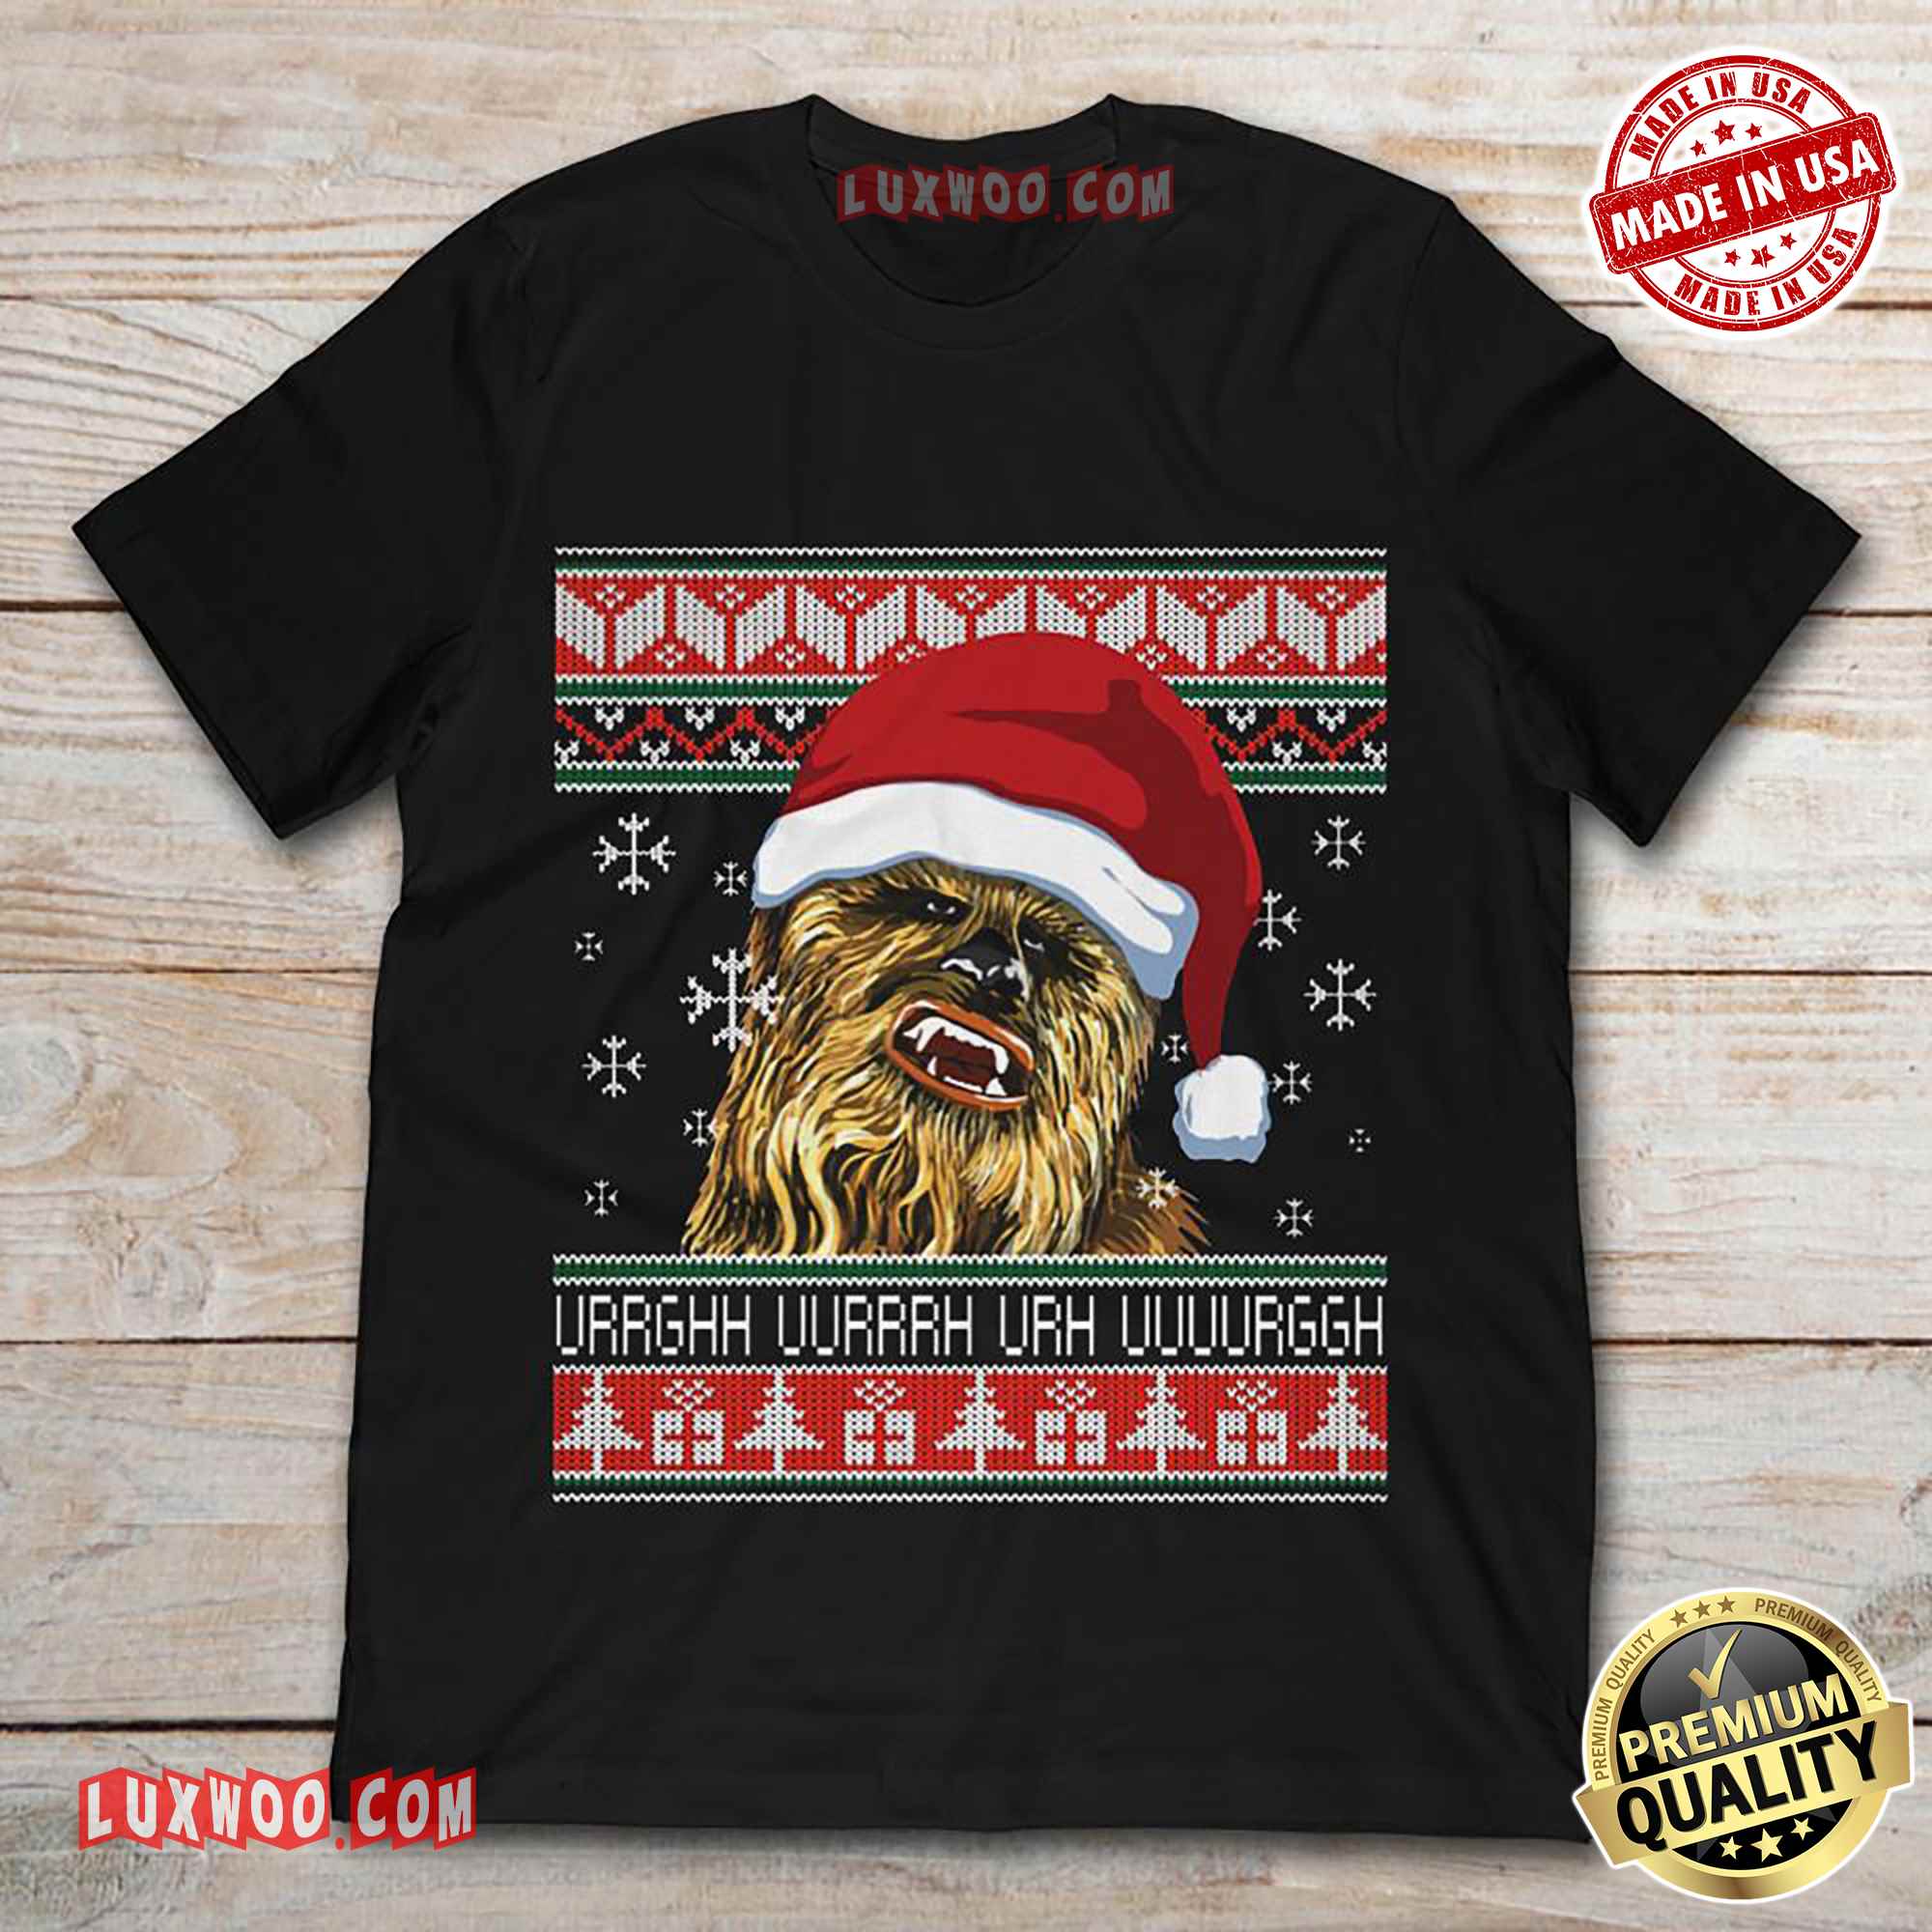 Chewbacca Translation Happy Birthday Urrghh Uurrrh Urh Uuuurggh Tee Shirt